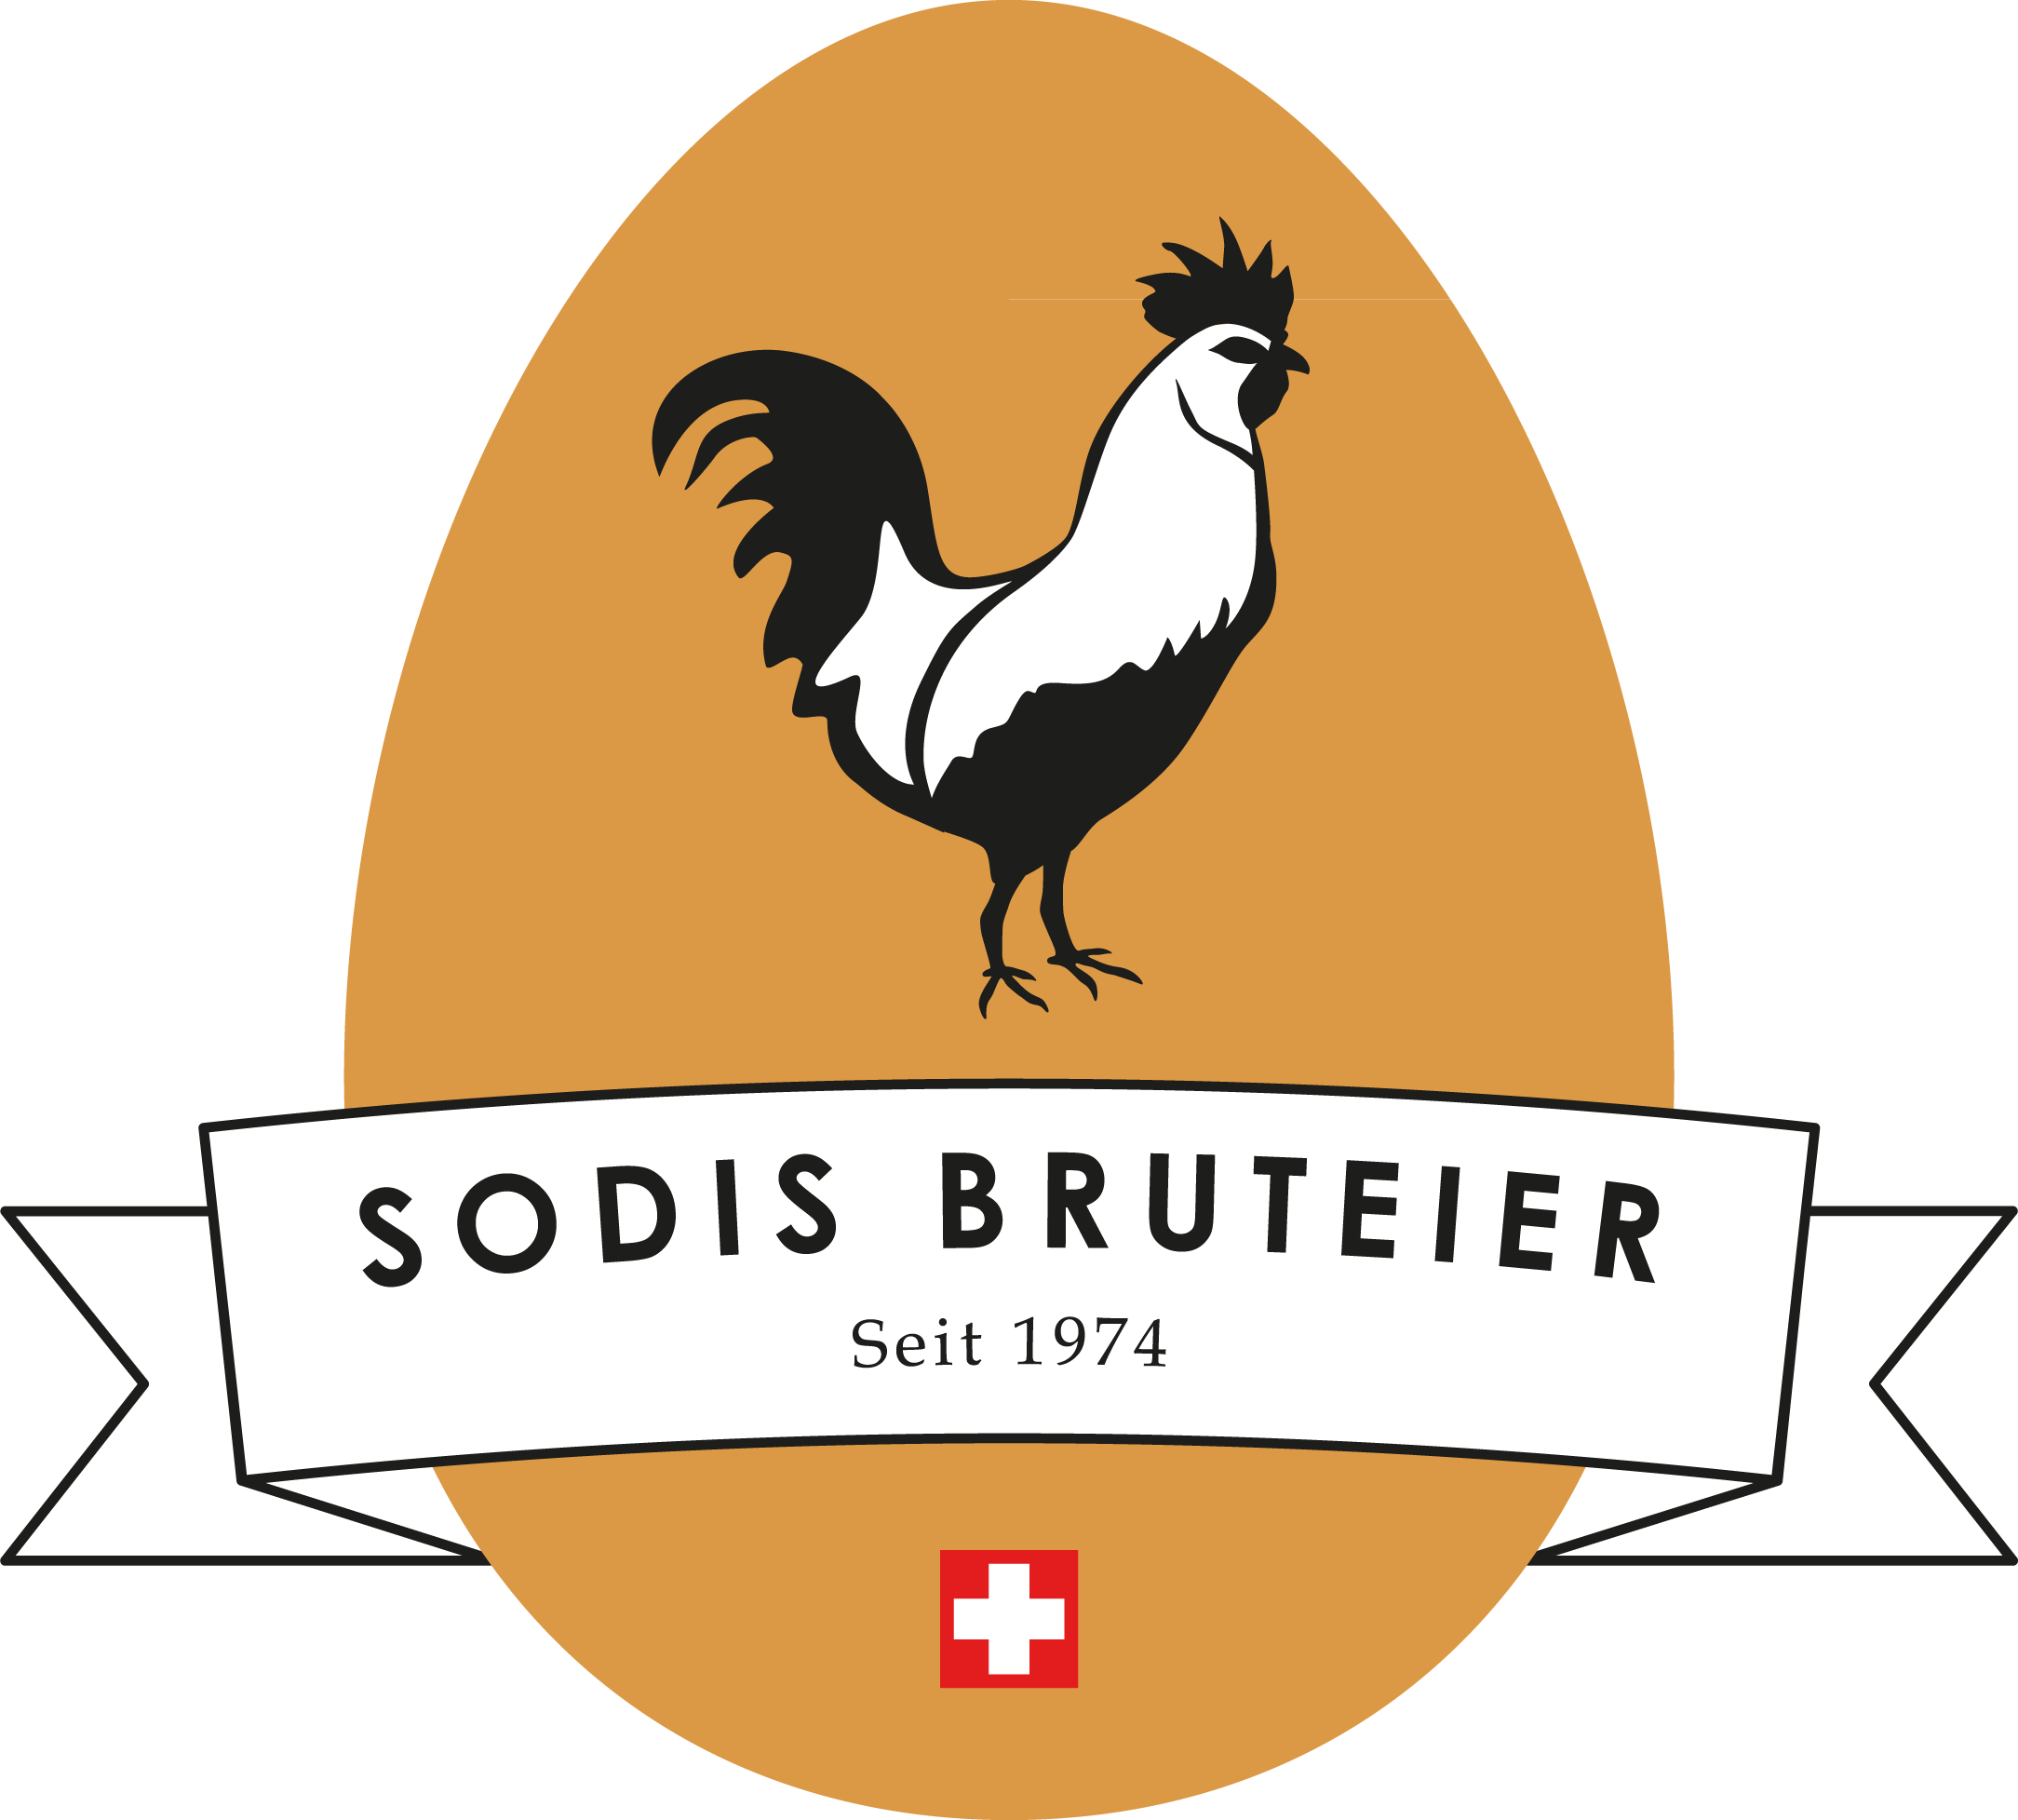 Sodis Bruteier AG